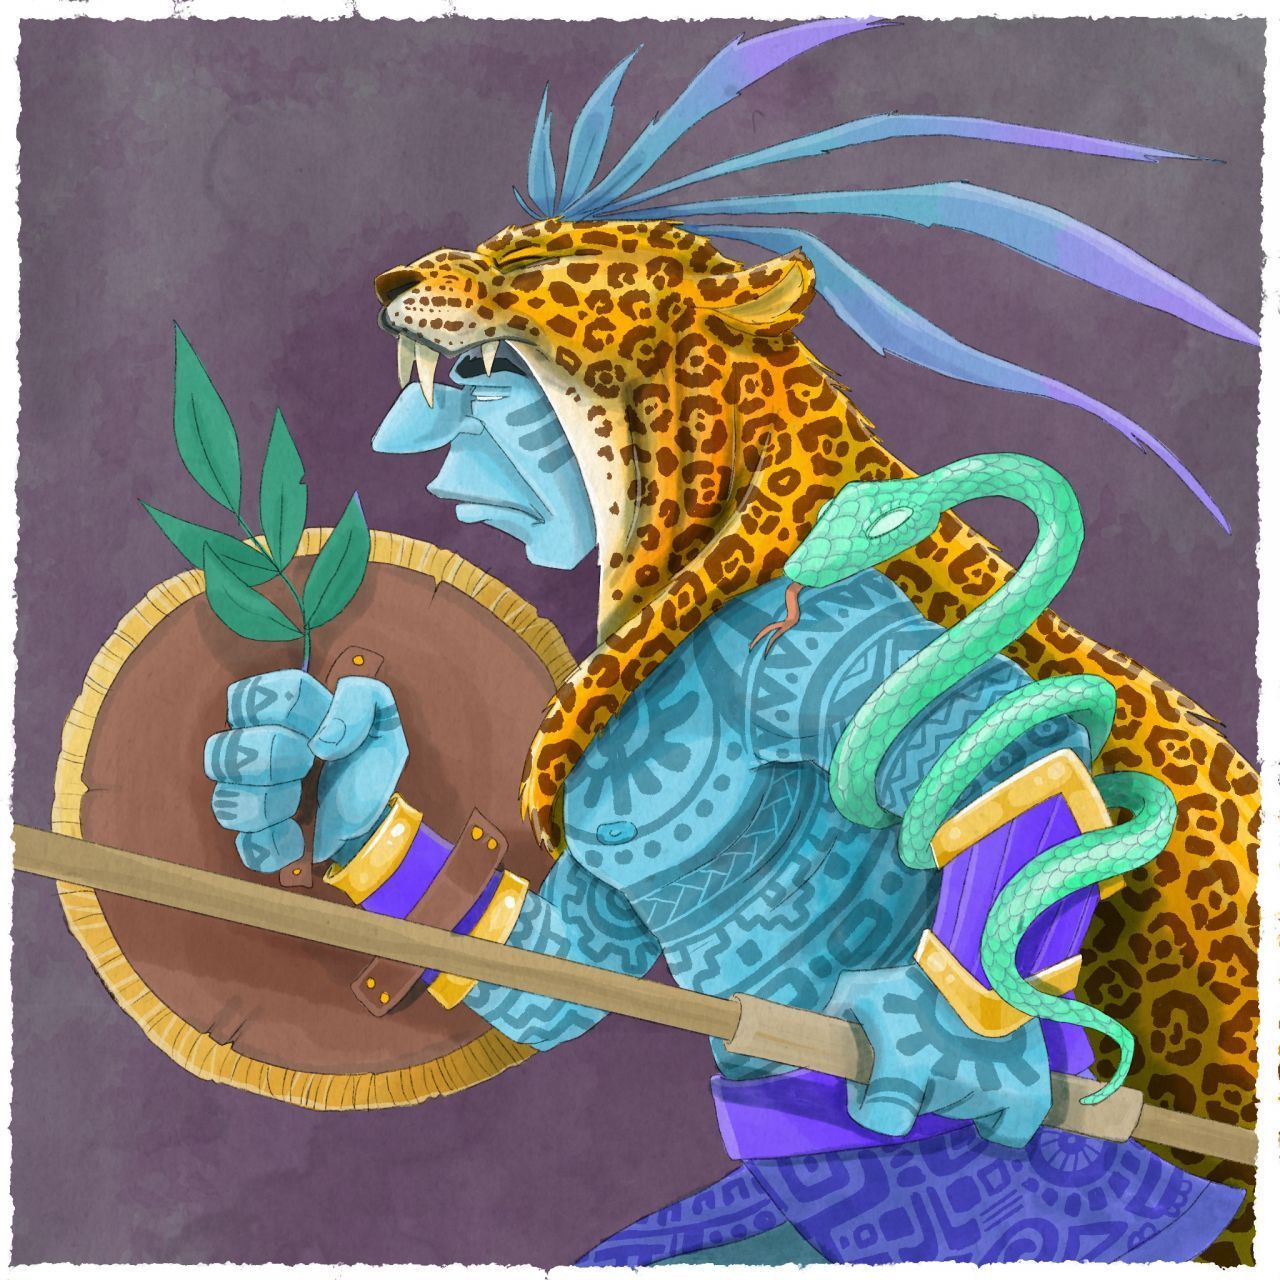 Die Azteken glaubten an viele verschiedene Götter. Wie bei den alten Griechen oder Römern hatte auch hier jeder Gott bestimmte Aufgabengebiete, wie Tod, Wasser, Feuer, Wind. Der Hauptgott Huitzilopochtli wurde als Kriegs- und Sonnengott verehrt. Oft wird er mit Jaguar-Kopf dargestellt. Er fungierte auch als Schutzpatron der Hauptstadt. Den Göttern wurden Opfer gebracht. Das konnten Lebensmittel, Blumen, Tiere, aber auch Mensc